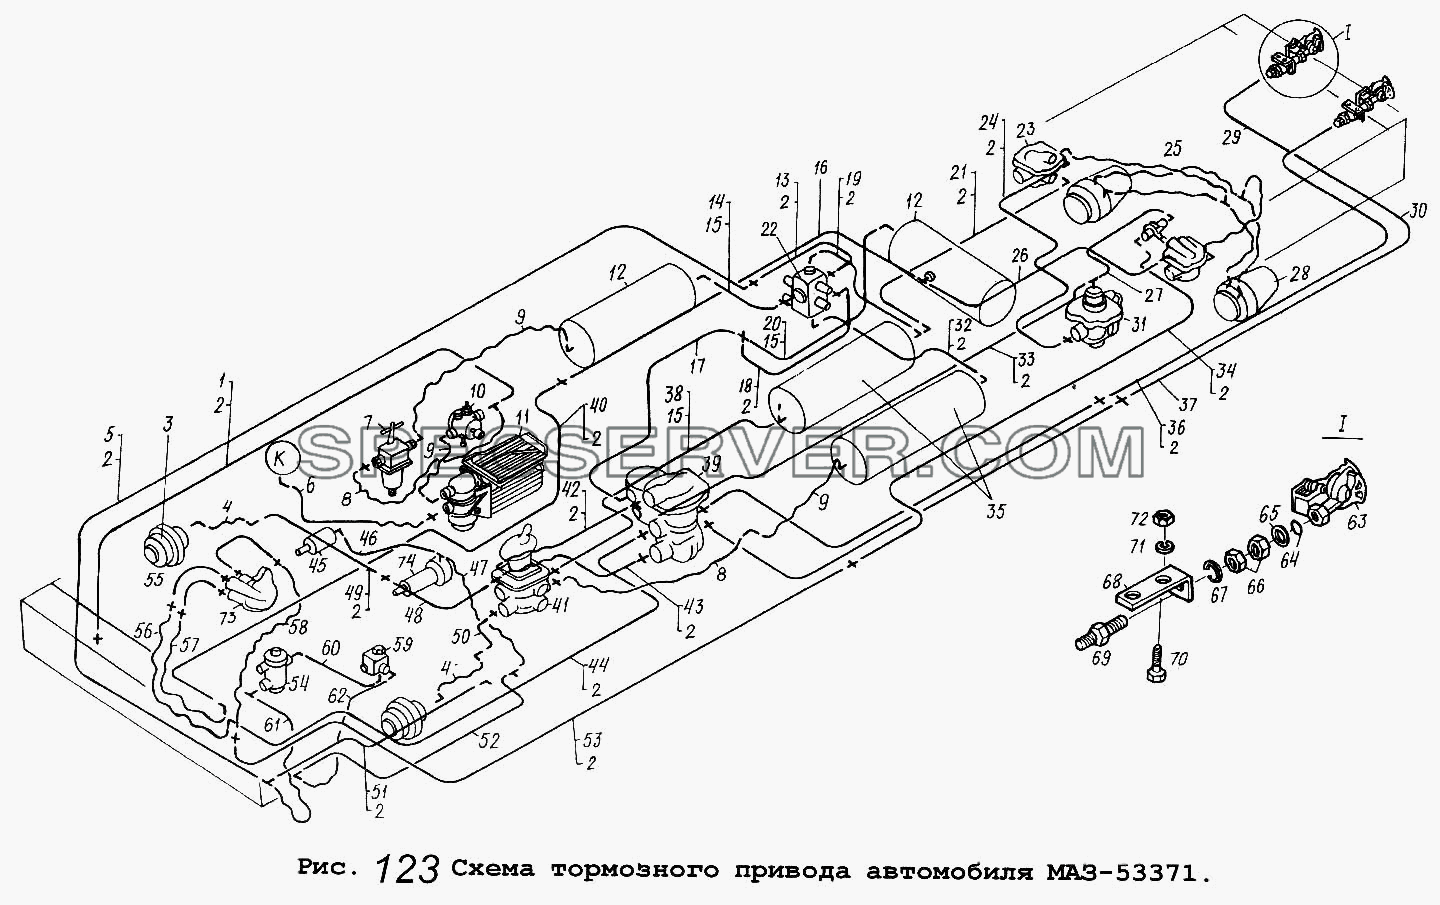 Схема тормозного привода автомобиля МАЗ-53371 для МАЗ-53371 (список запасных частей)